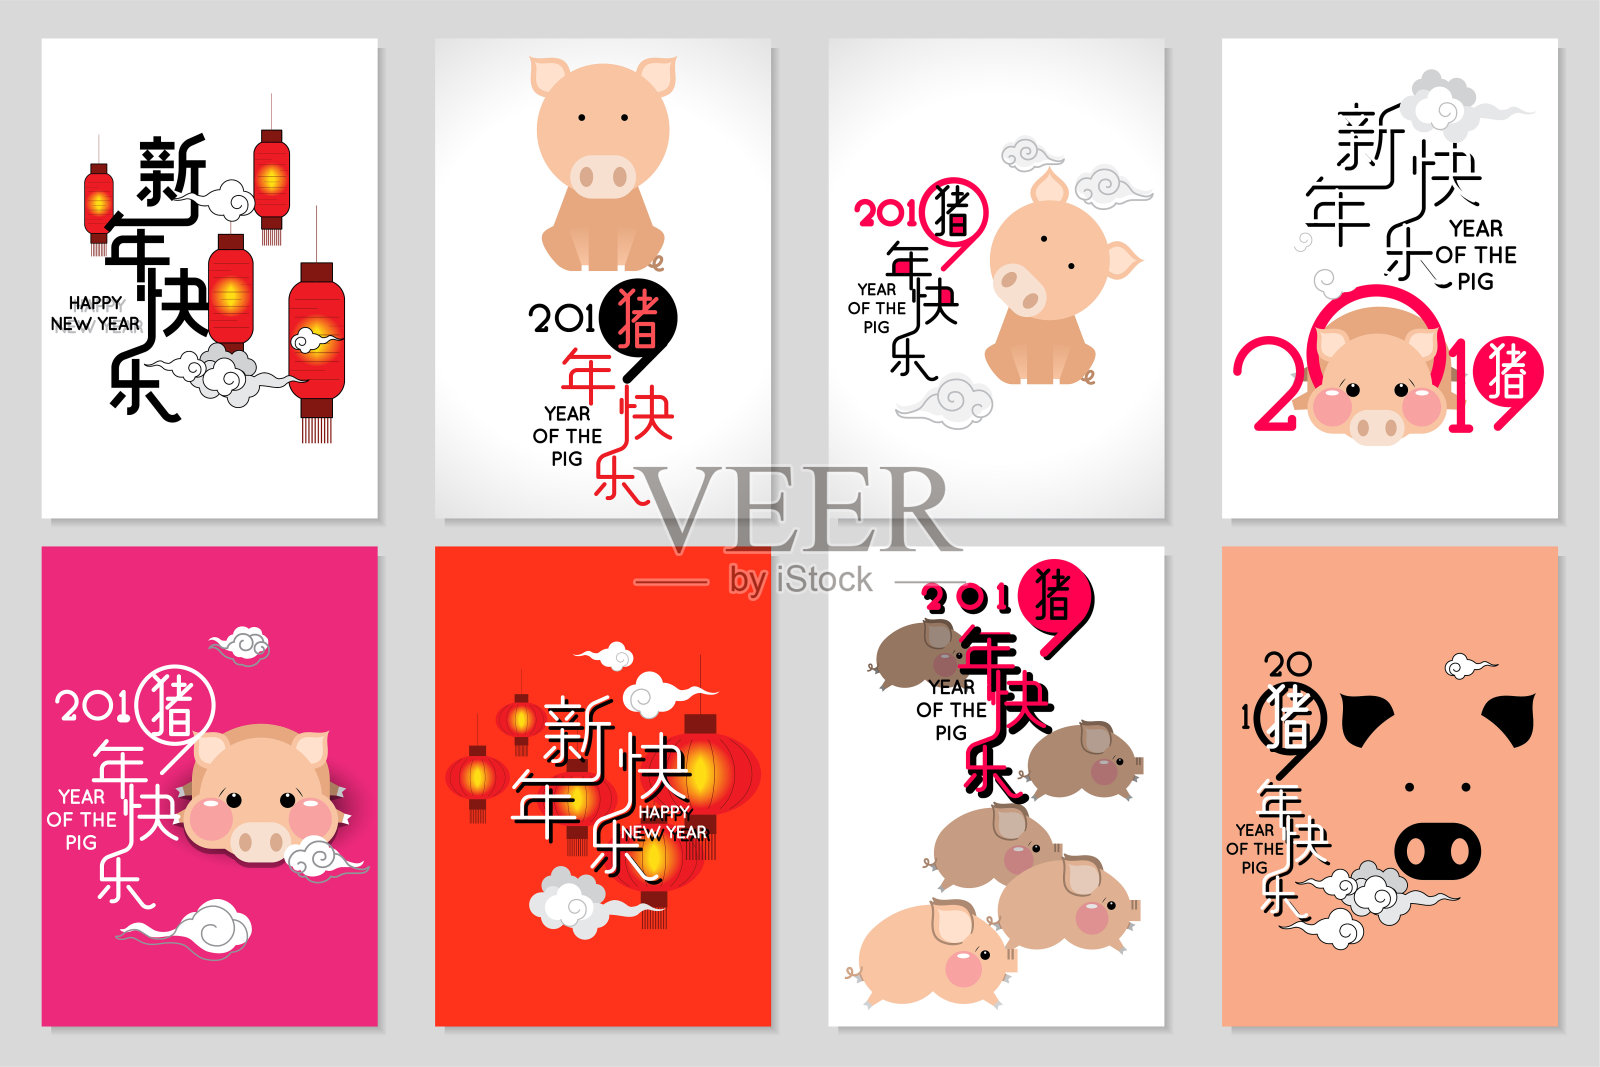 用可爱的卡通猪和云朵祝你2019年春节快乐。中文翻译:春节快乐，猪年快乐。设计模板素材